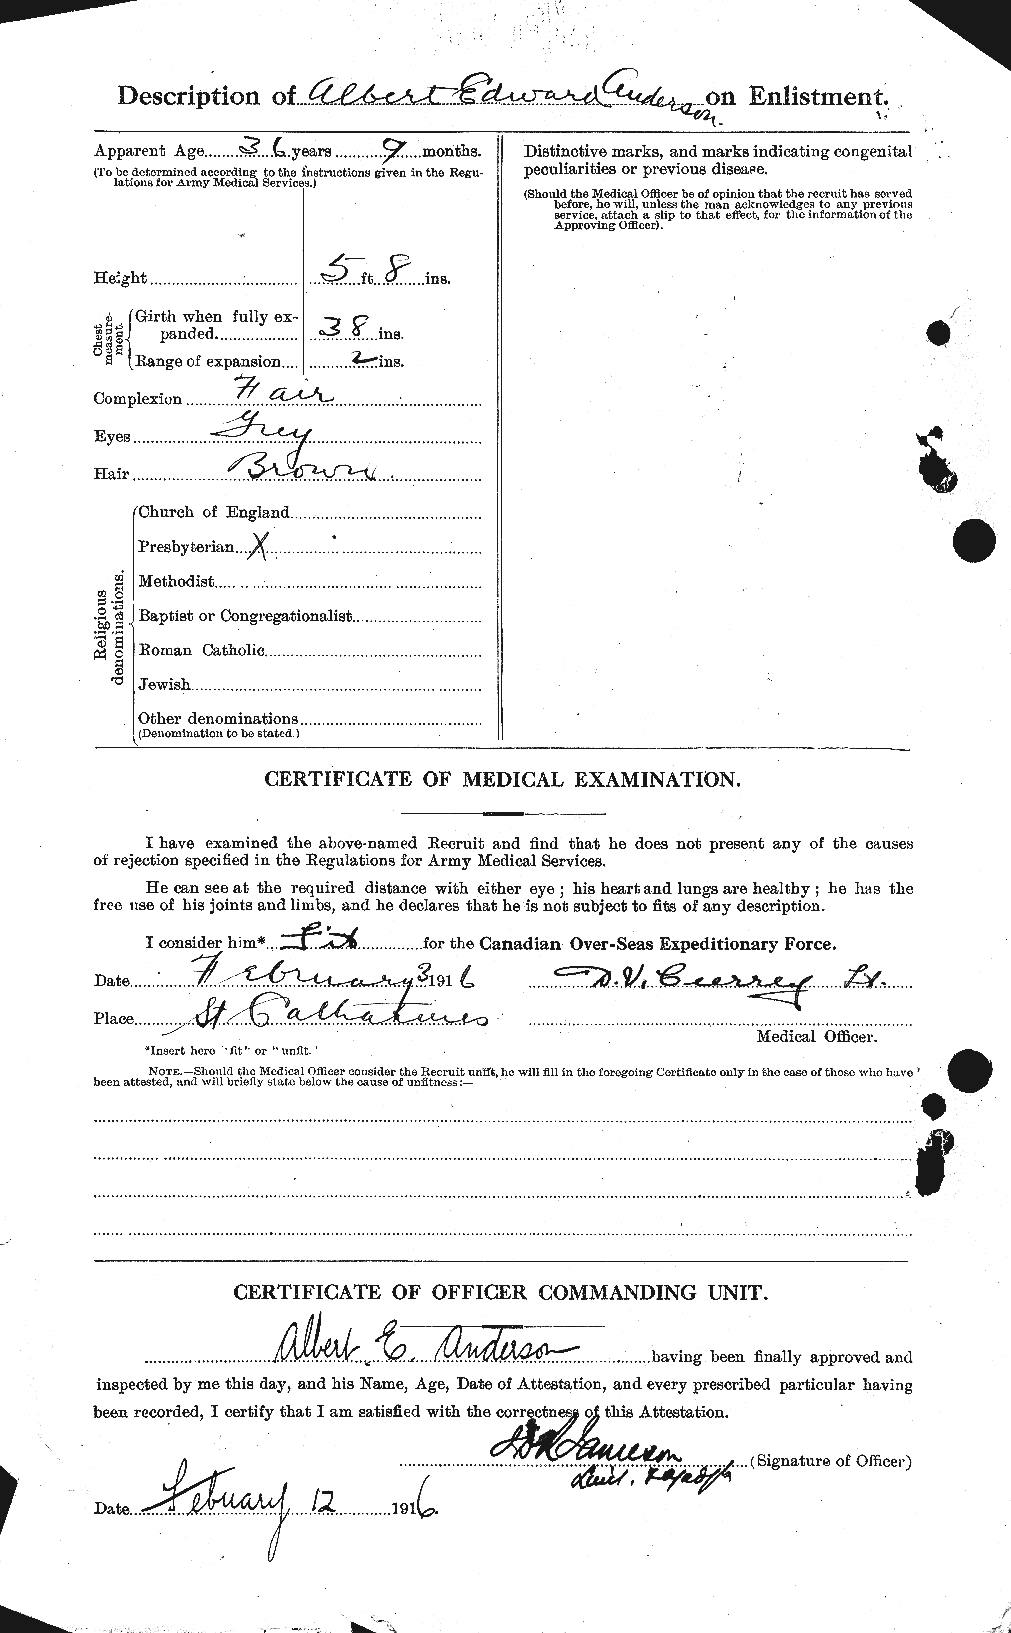 Dossiers du Personnel de la Première Guerre mondiale - CEC 209546b